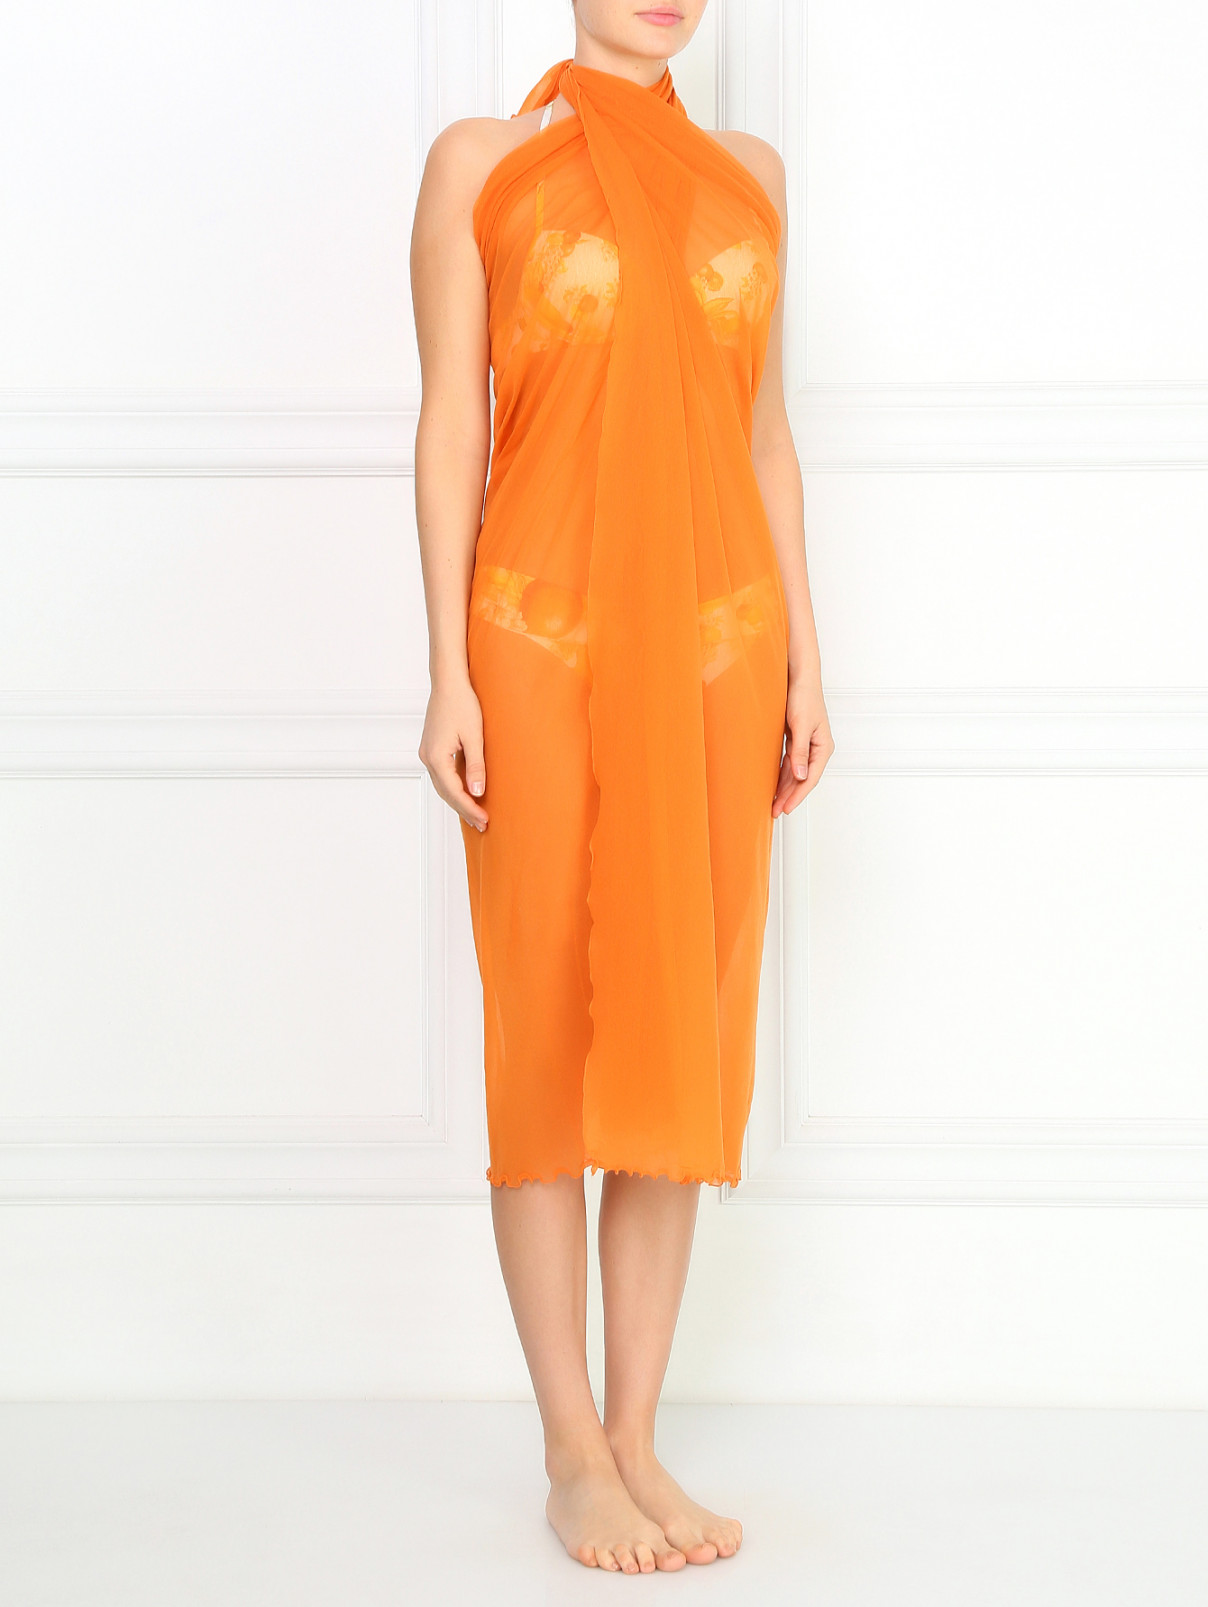 Парео с оборками La Perla  –  Модель Общий вид  – Цвет:  Оранжевый